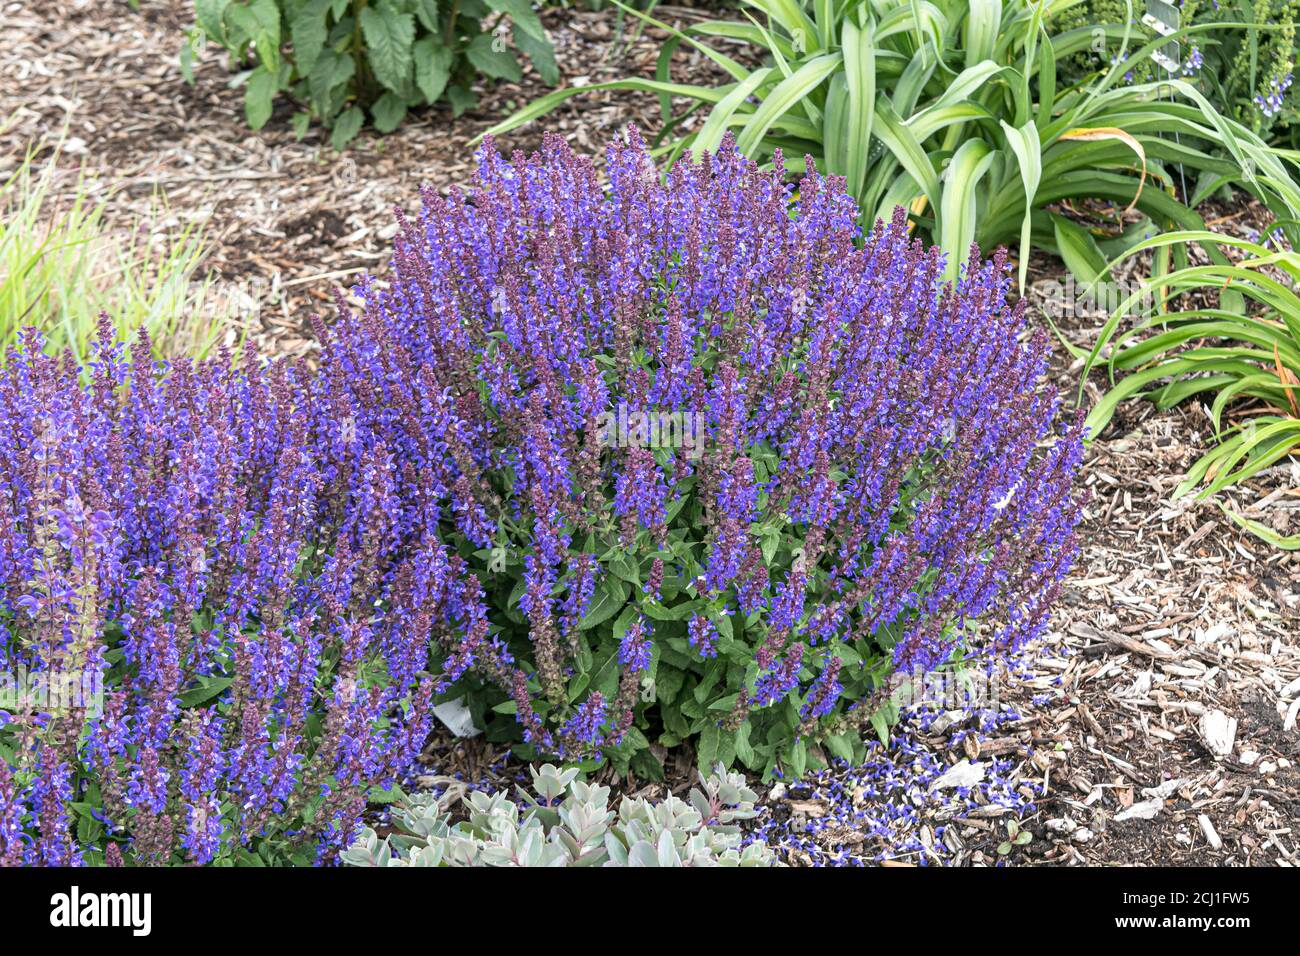 Waldsalbei, Balkanklary, Holzsalbei (Salvia nemorosa 'Violet profusion', Salvia nemorosa Violet profusion), blühend, kultivierte Violet-Profusion Stockfoto